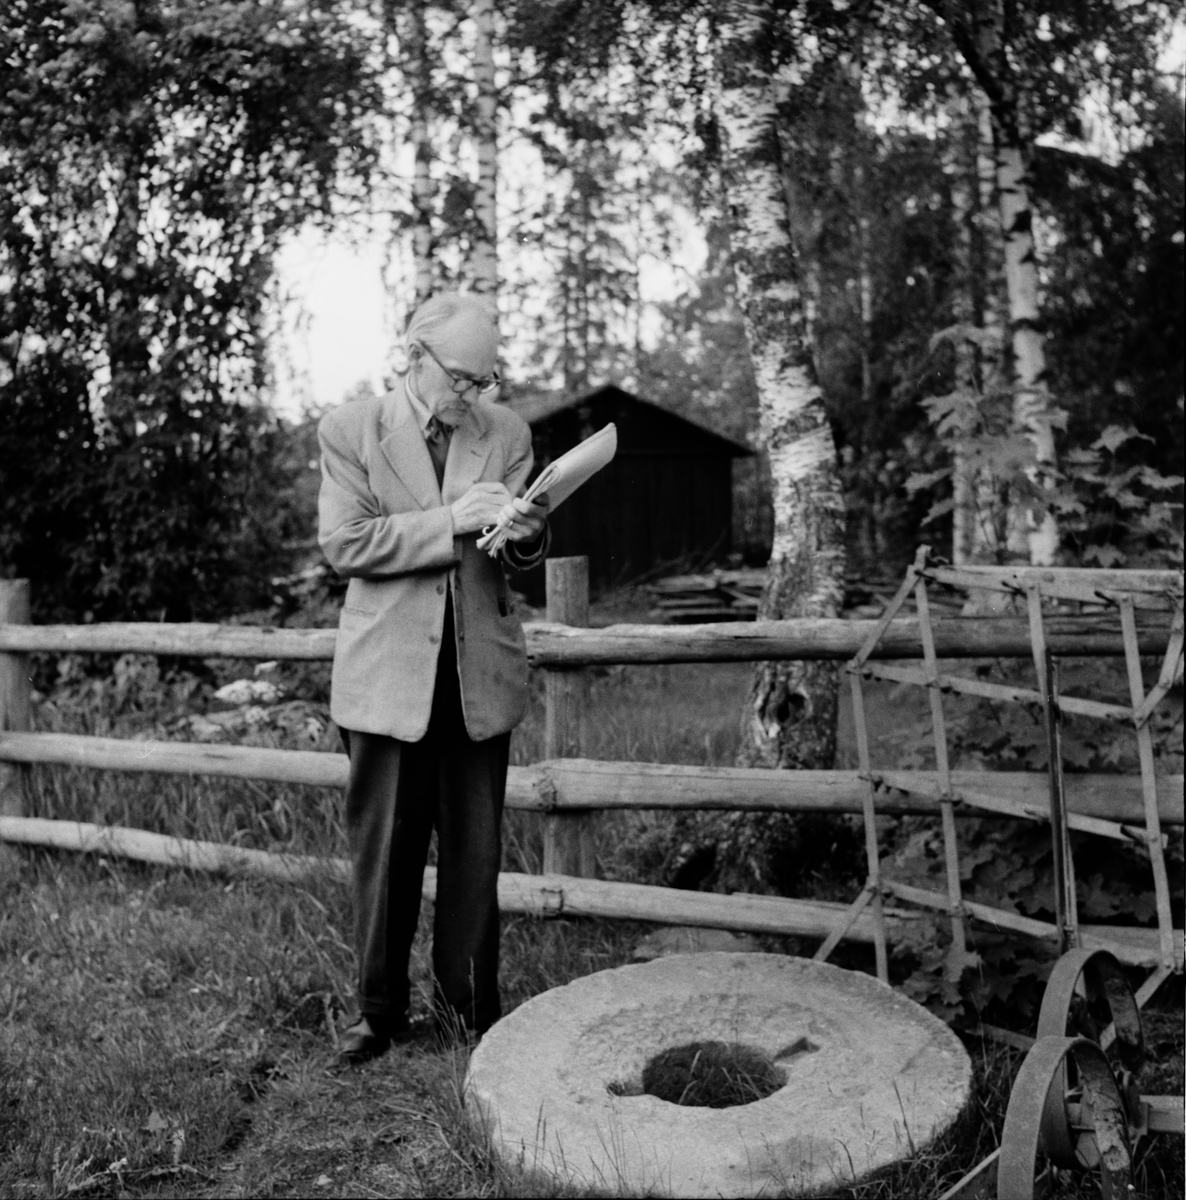 Professor John Granlund Nordiska museet
Konstnär Olle Homman
Fru Inga-Lill Granlund på expedition i Hälsingland.
Smedja i Alfta
20/6 1956